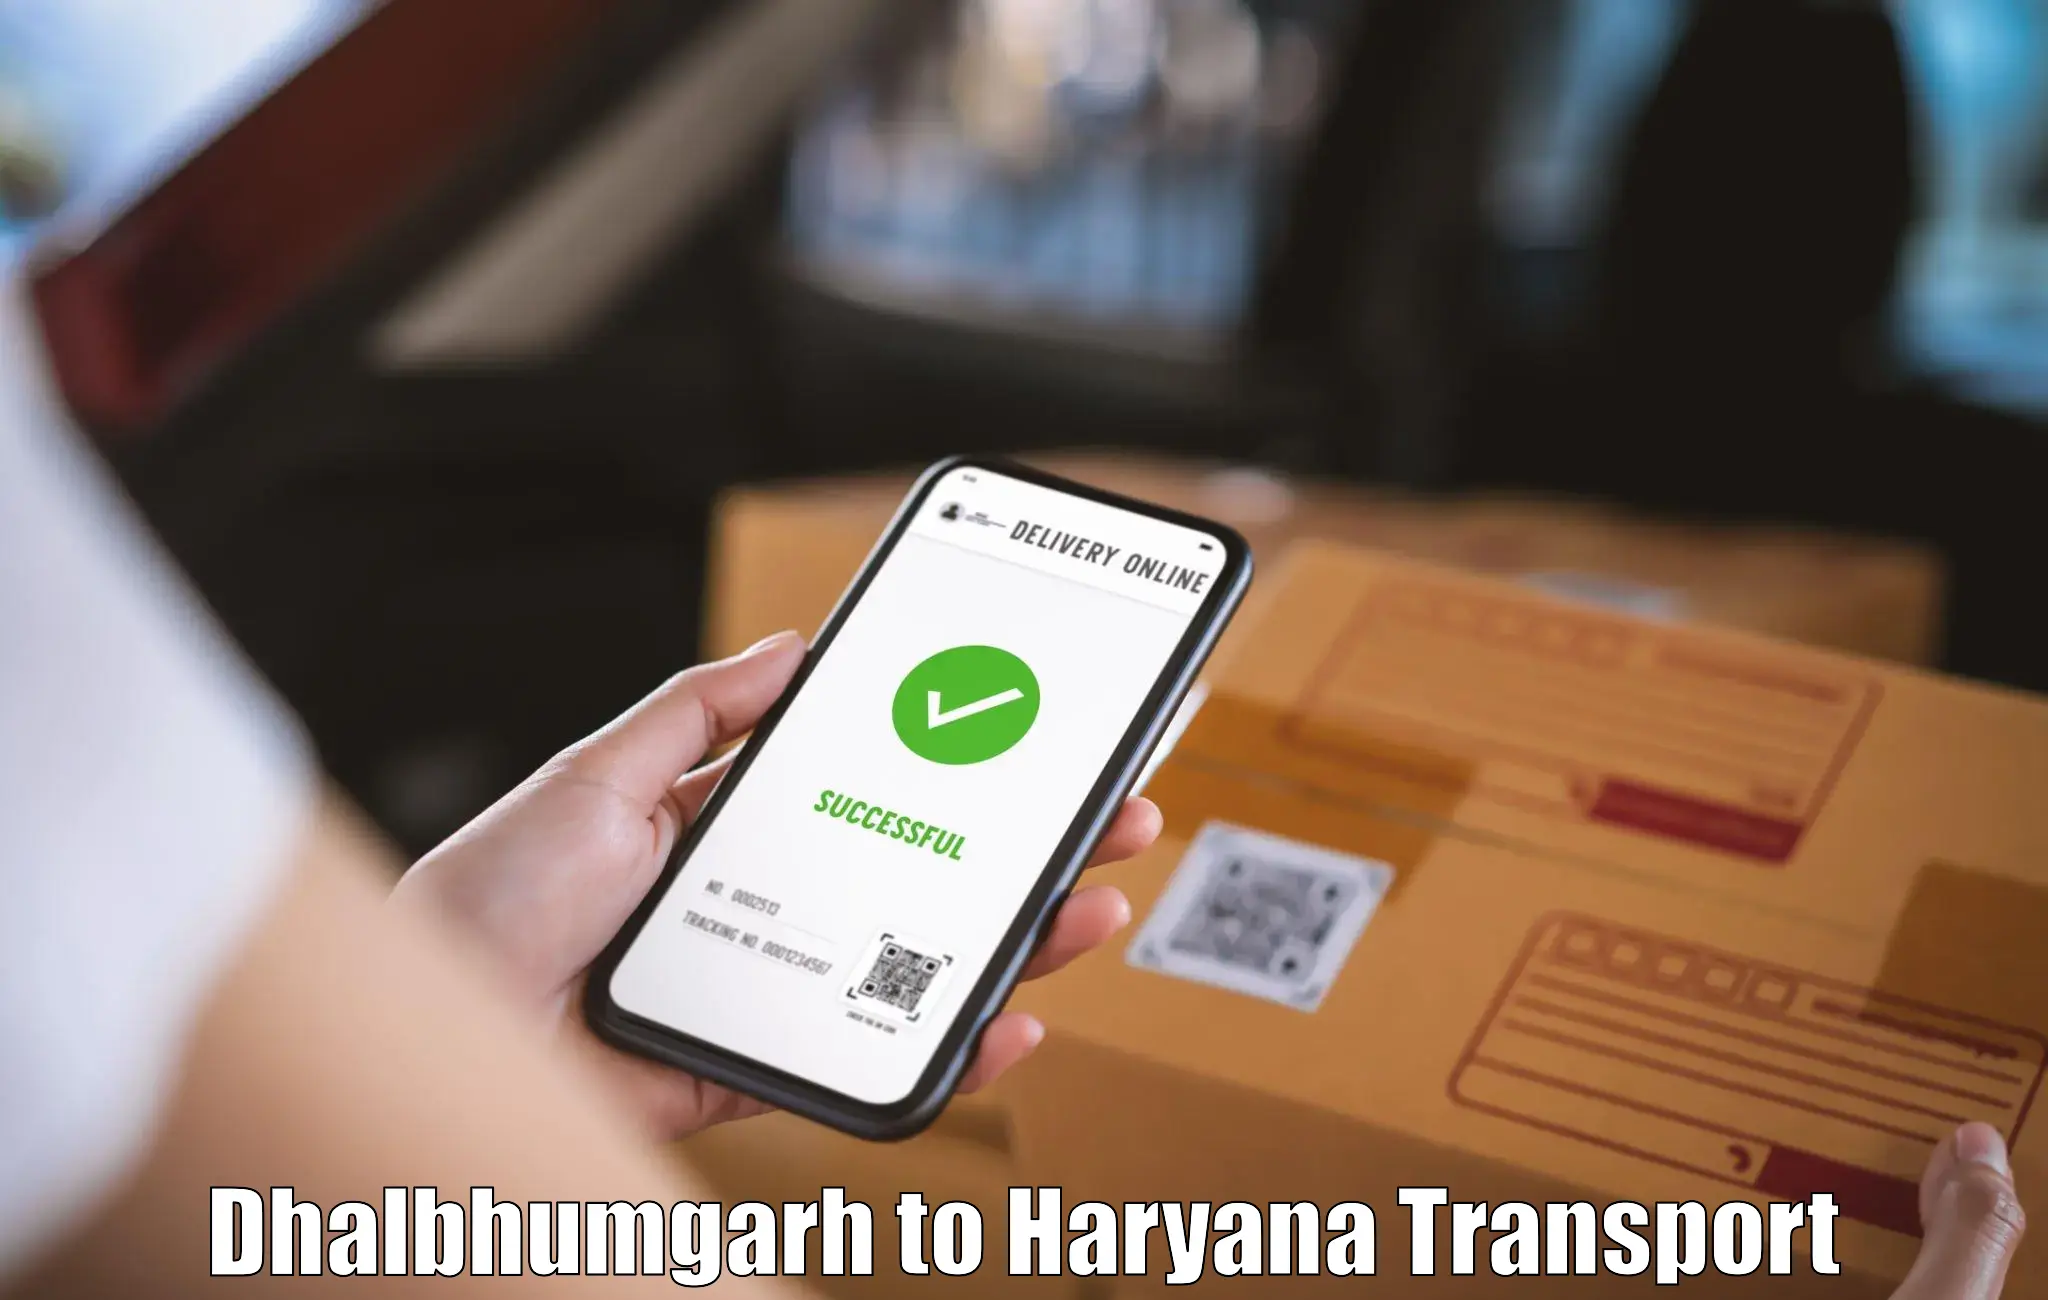 Vehicle courier services Dhalbhumgarh to Kurukshetra